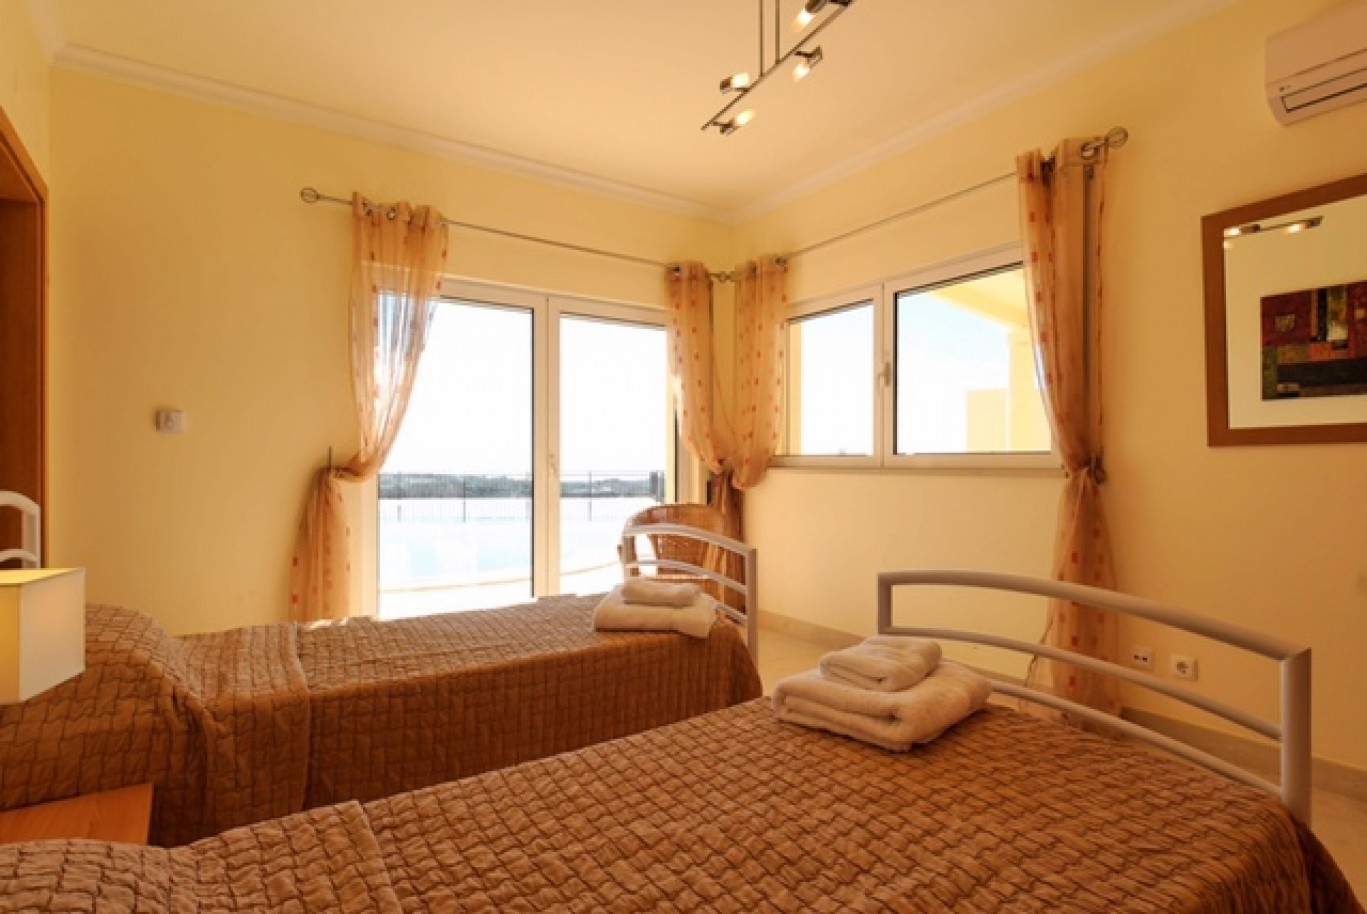 4 Bedroom Villa with swimming pool, for sale in Tavira, Algarve_201165